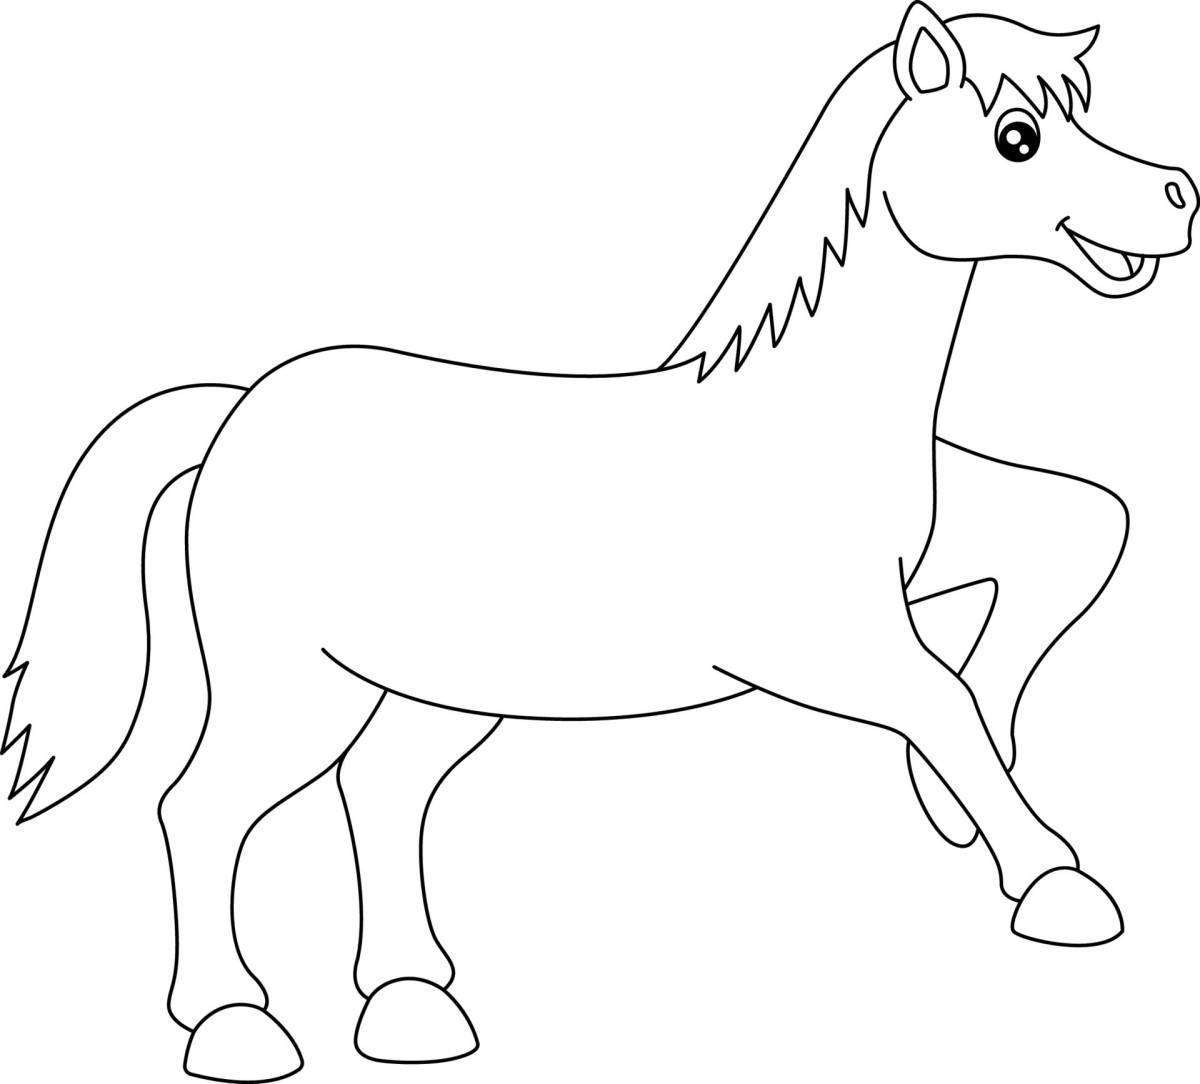 Яркая раскраска лошадь для детей 5-6 лет